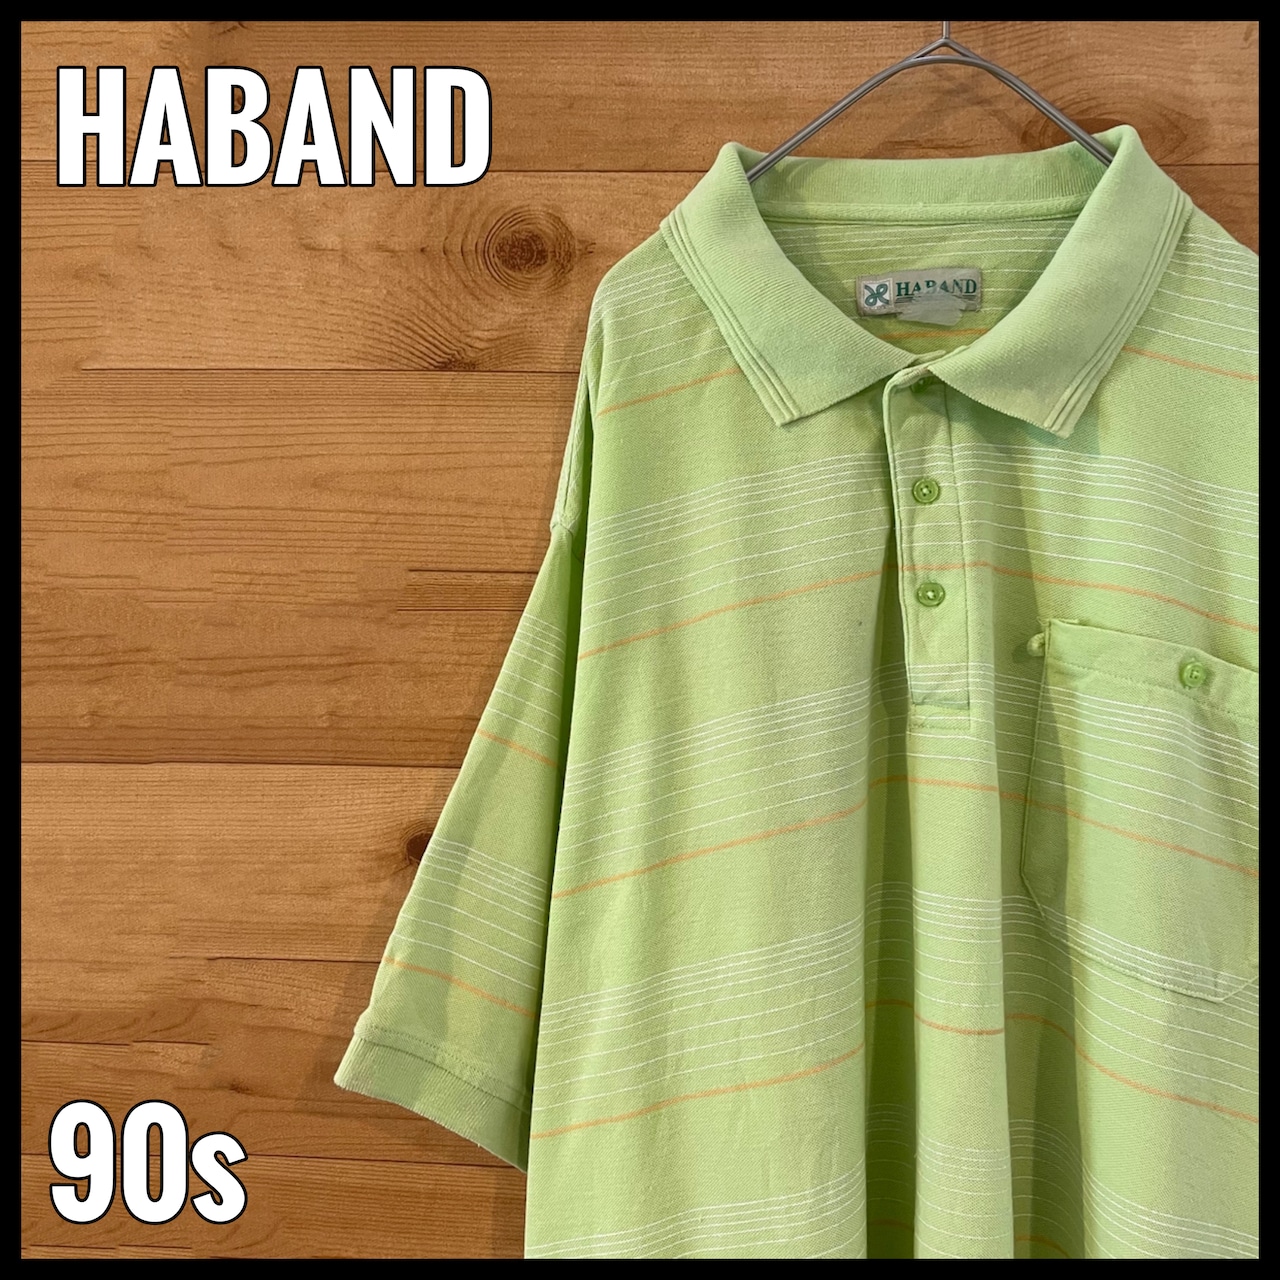 【HABAND】90s ビッグサイズ ポロシャツ 2XL相当 ボーダー レトロ ライトグリーン US古着 アメリカ古着